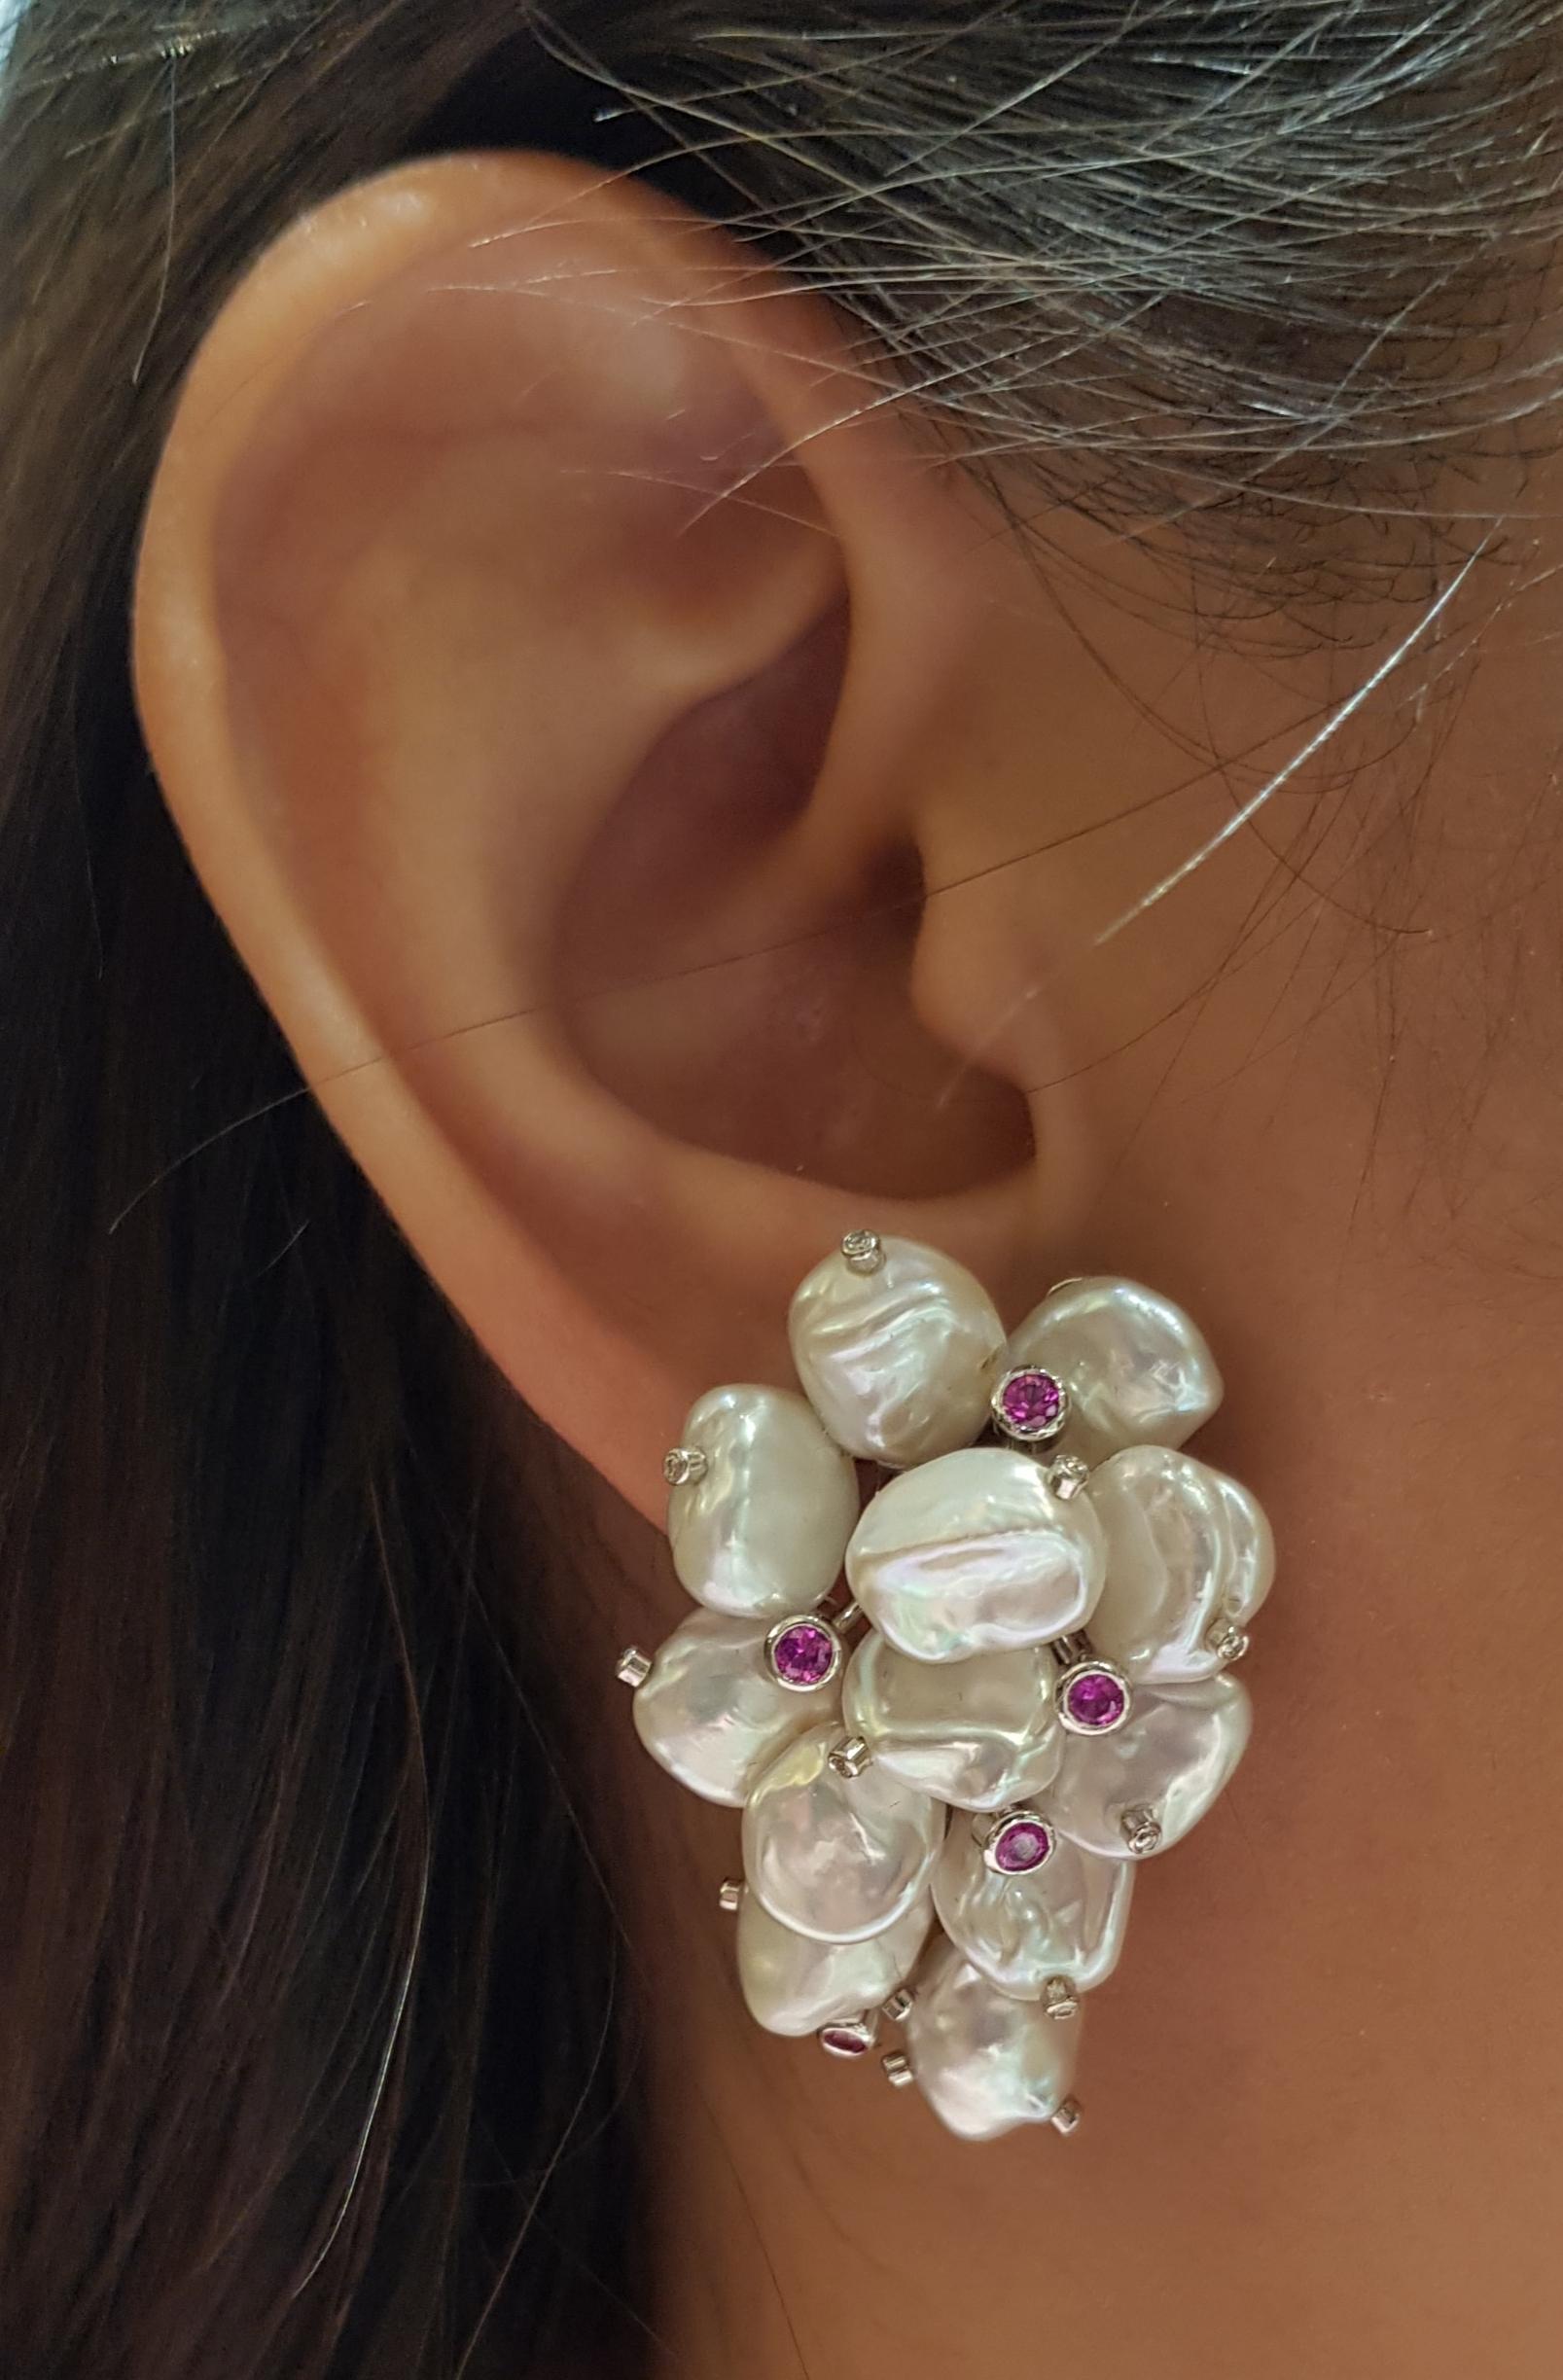 Perle mit rosa Saphir 0,45 Karat und Diamant 0,16 Karat Ohrringe in 18 Karat Weißgold gefasst

Breite:  2.3 cm 
Länge:  3.8 cm
Gesamtgewicht: 24,54 Gramm

